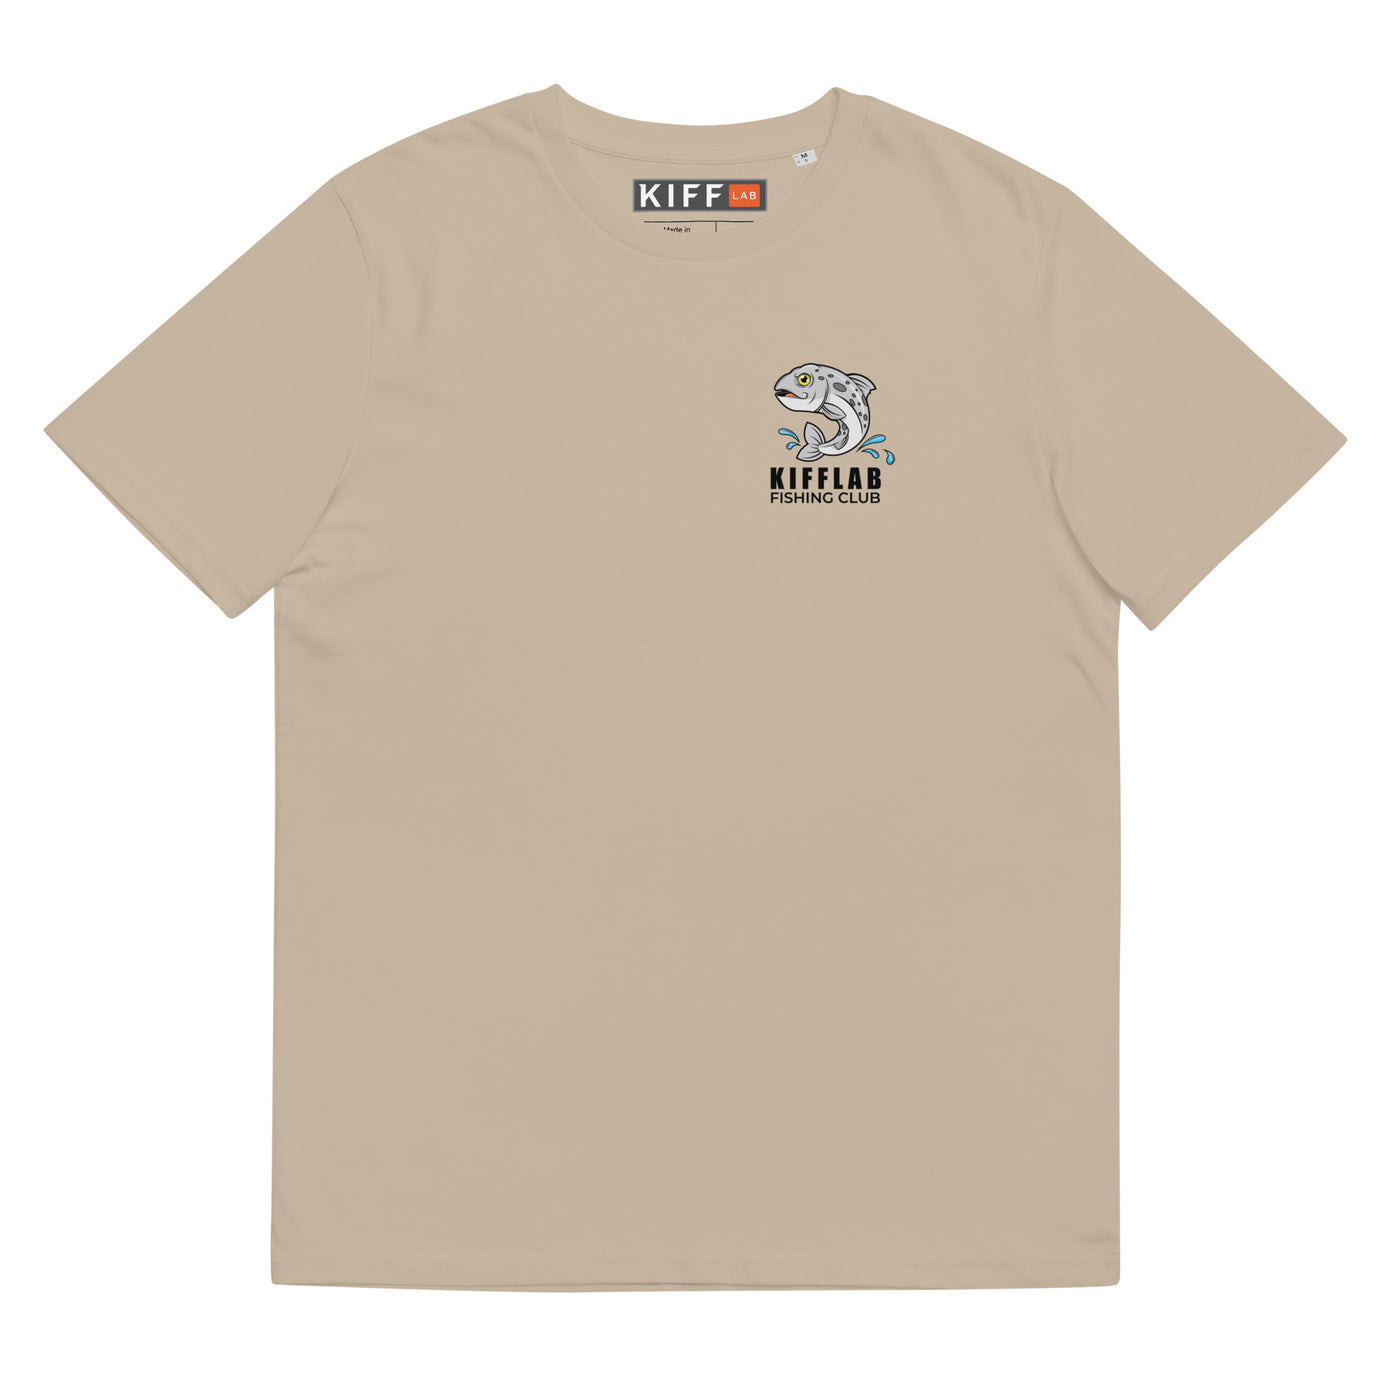 KiffLab Fishing Club Organic T-shirt